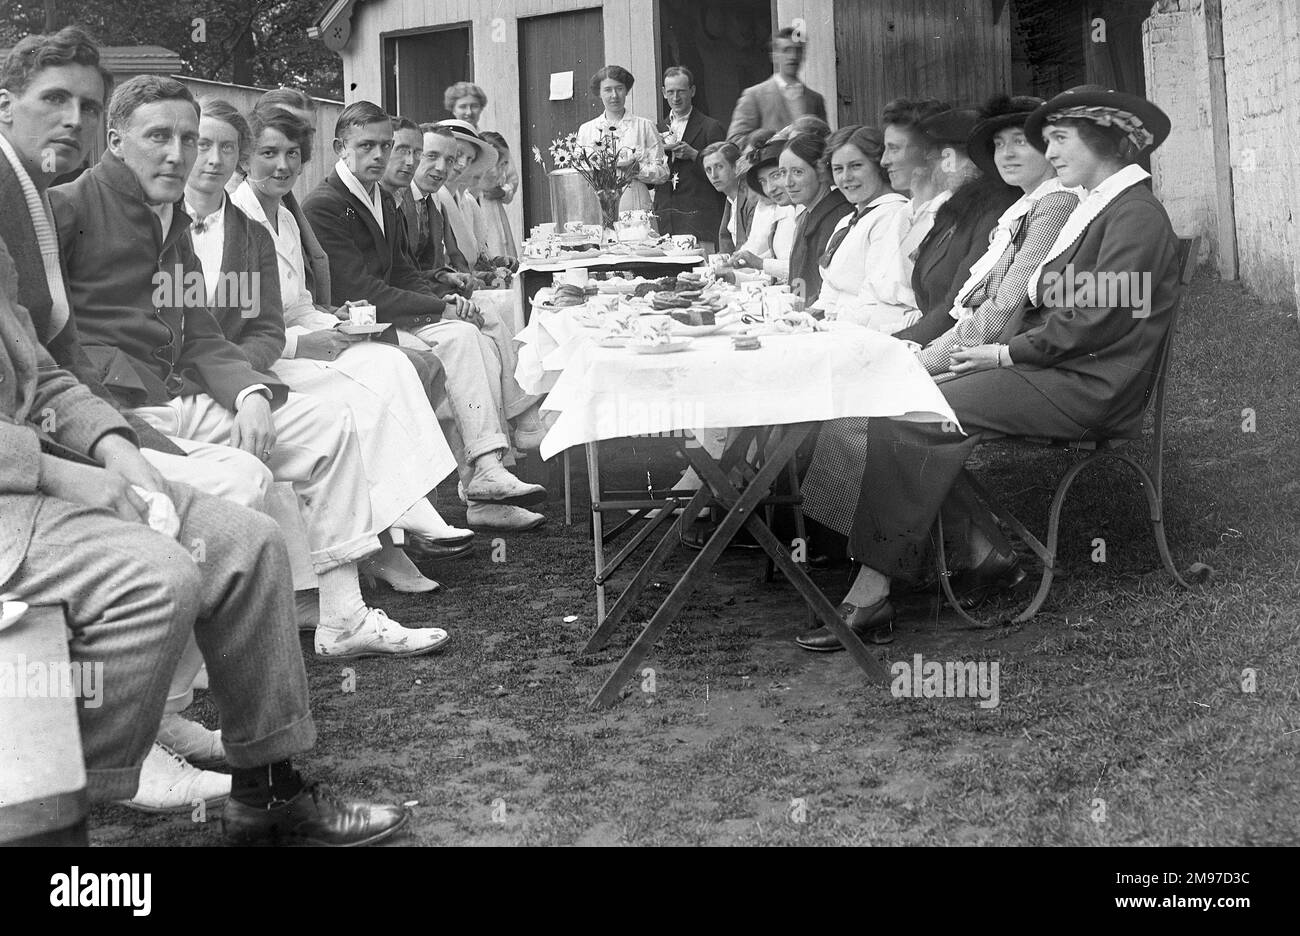 Groupe de thé au tournoi de tennis au club de tennis de Moorfield, Stockport. Une photographie de groupe officielle qui dévaste le style et qui est poignante étant donné ce que la tragédie en attendait tant que la première Guerre mondiale a éclaté un an plus tard. Banque D'Images